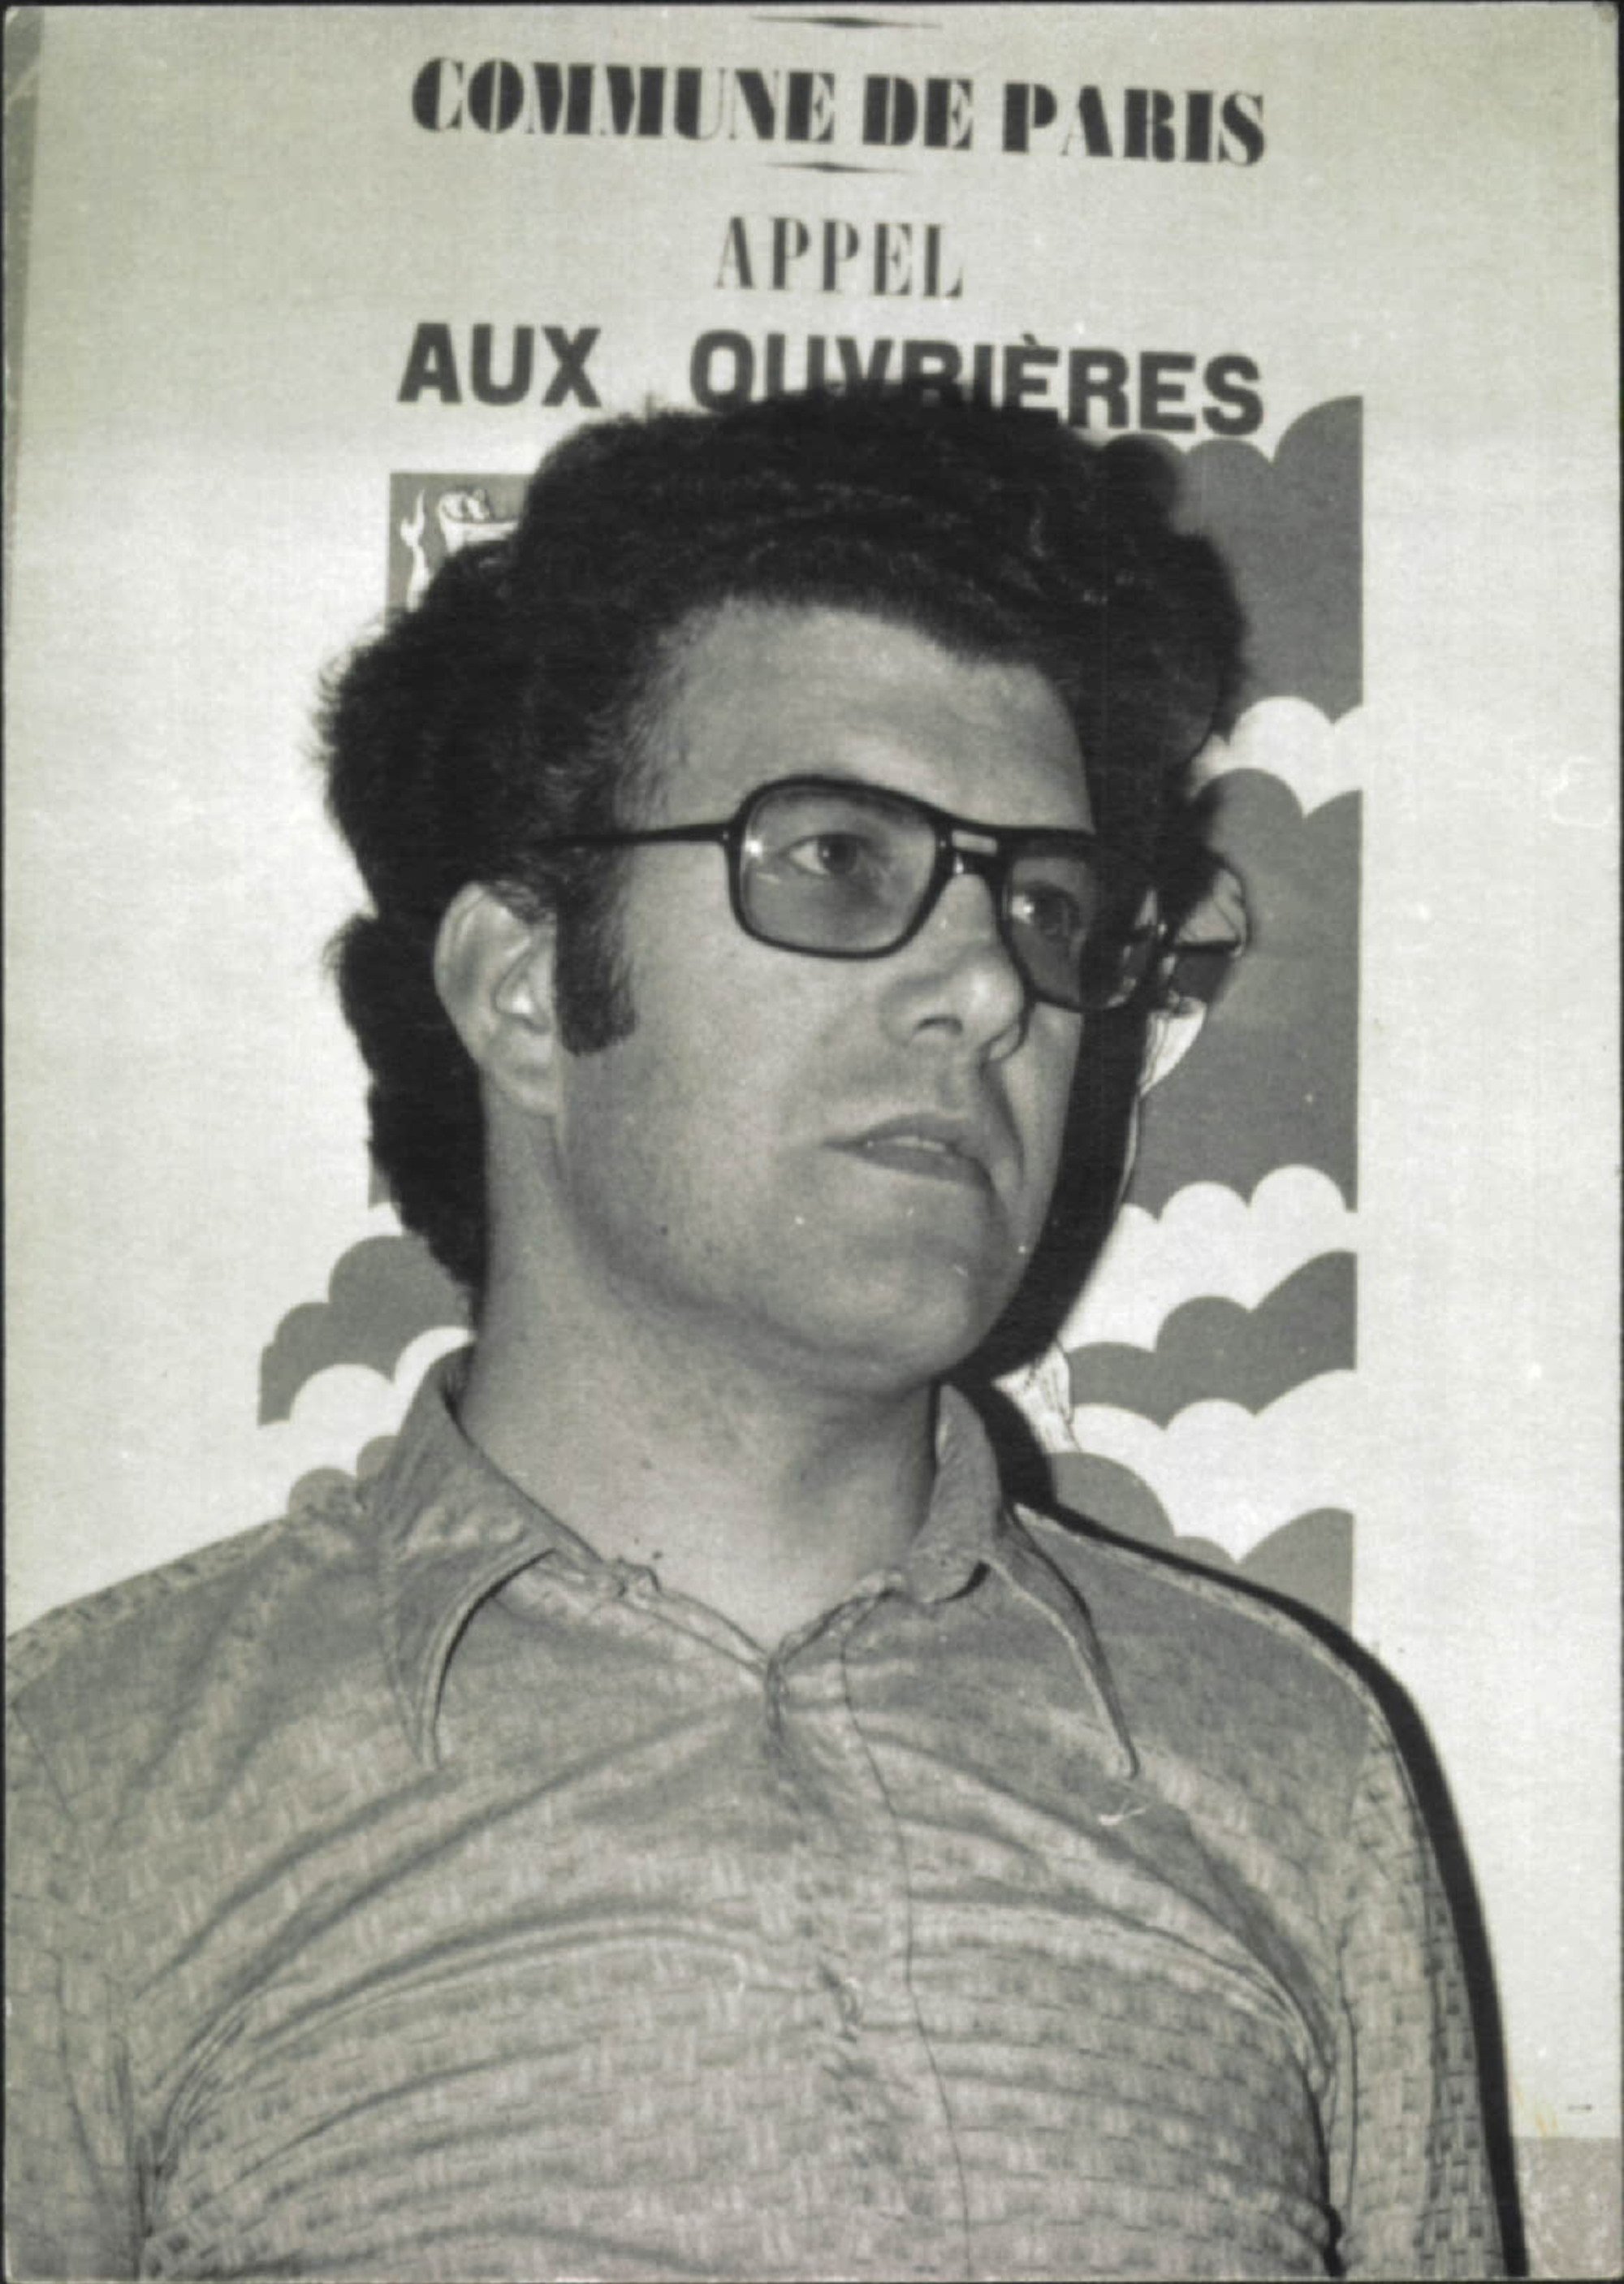 Mor als 85 anys l'històric sindicalista Agustí Prats, un dels fundadors de CCOO